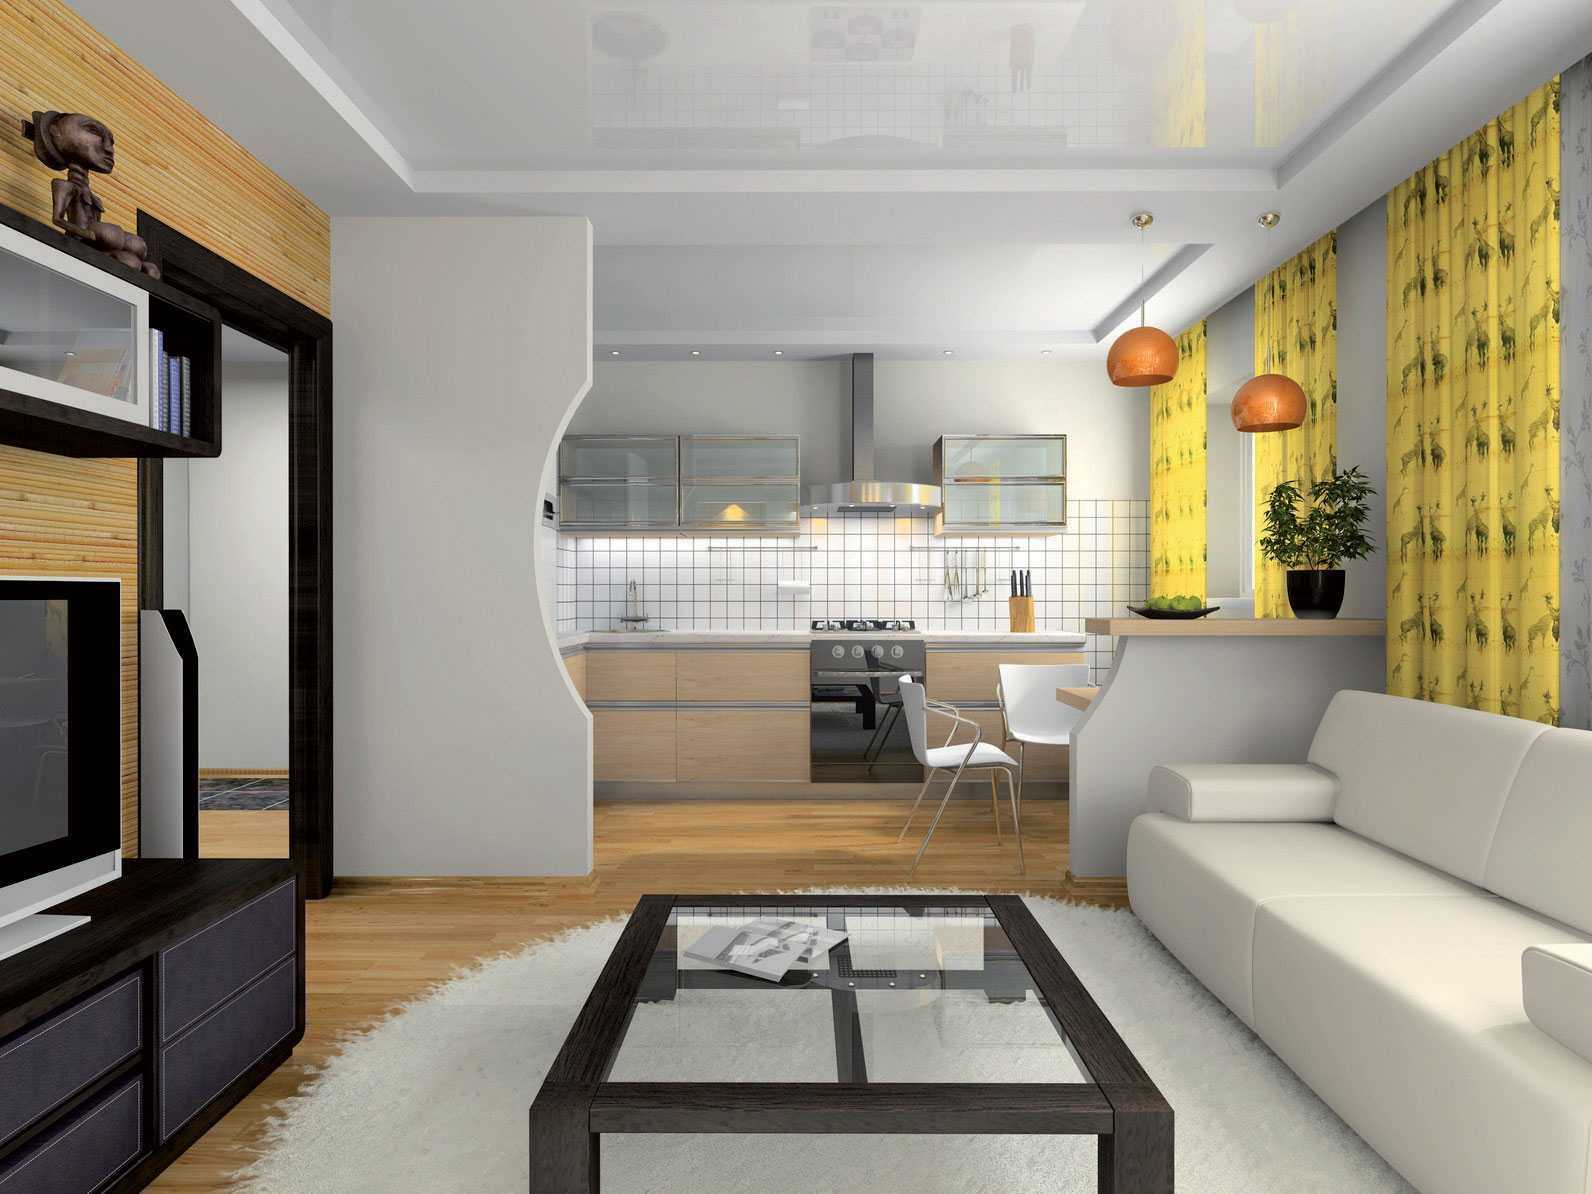 Кухня совмещенная с прихожей: примеры дизайна в квартире и частном доме